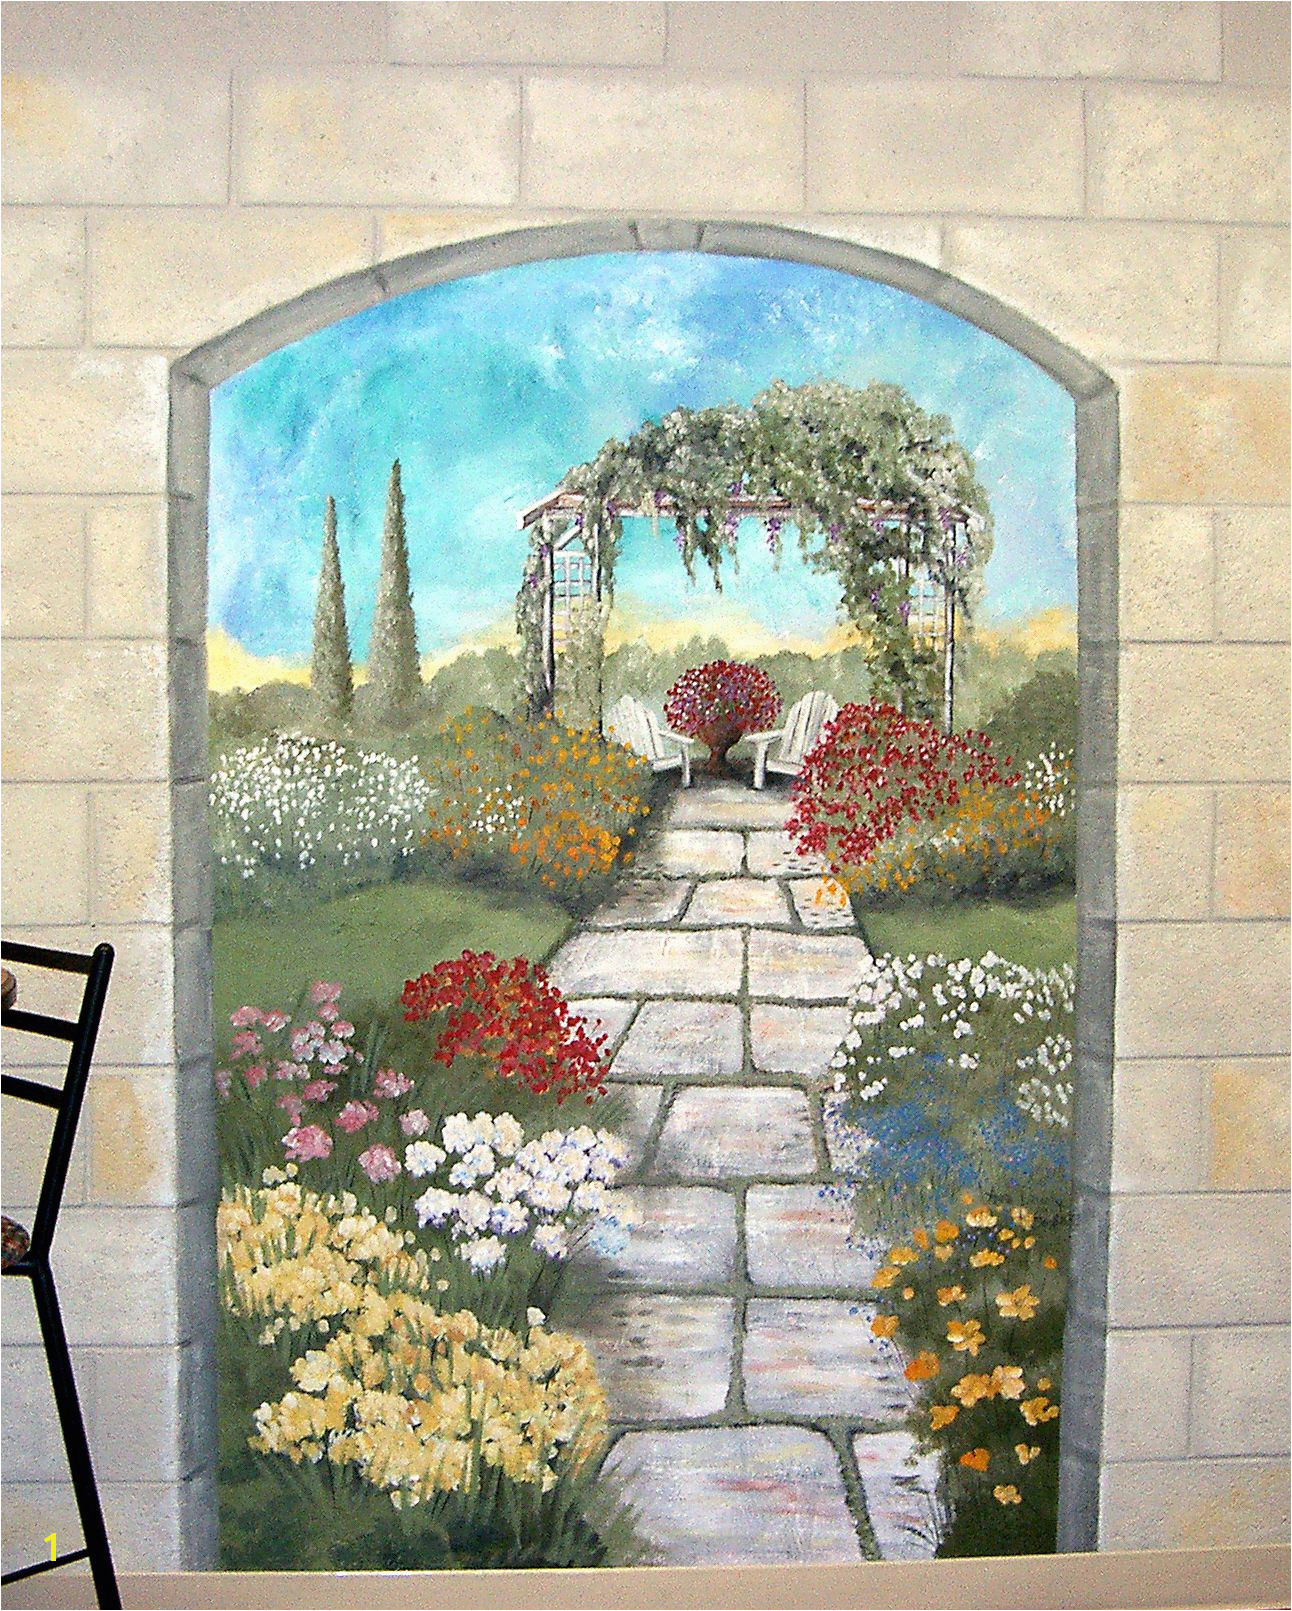 Garden mural on a cement block wall